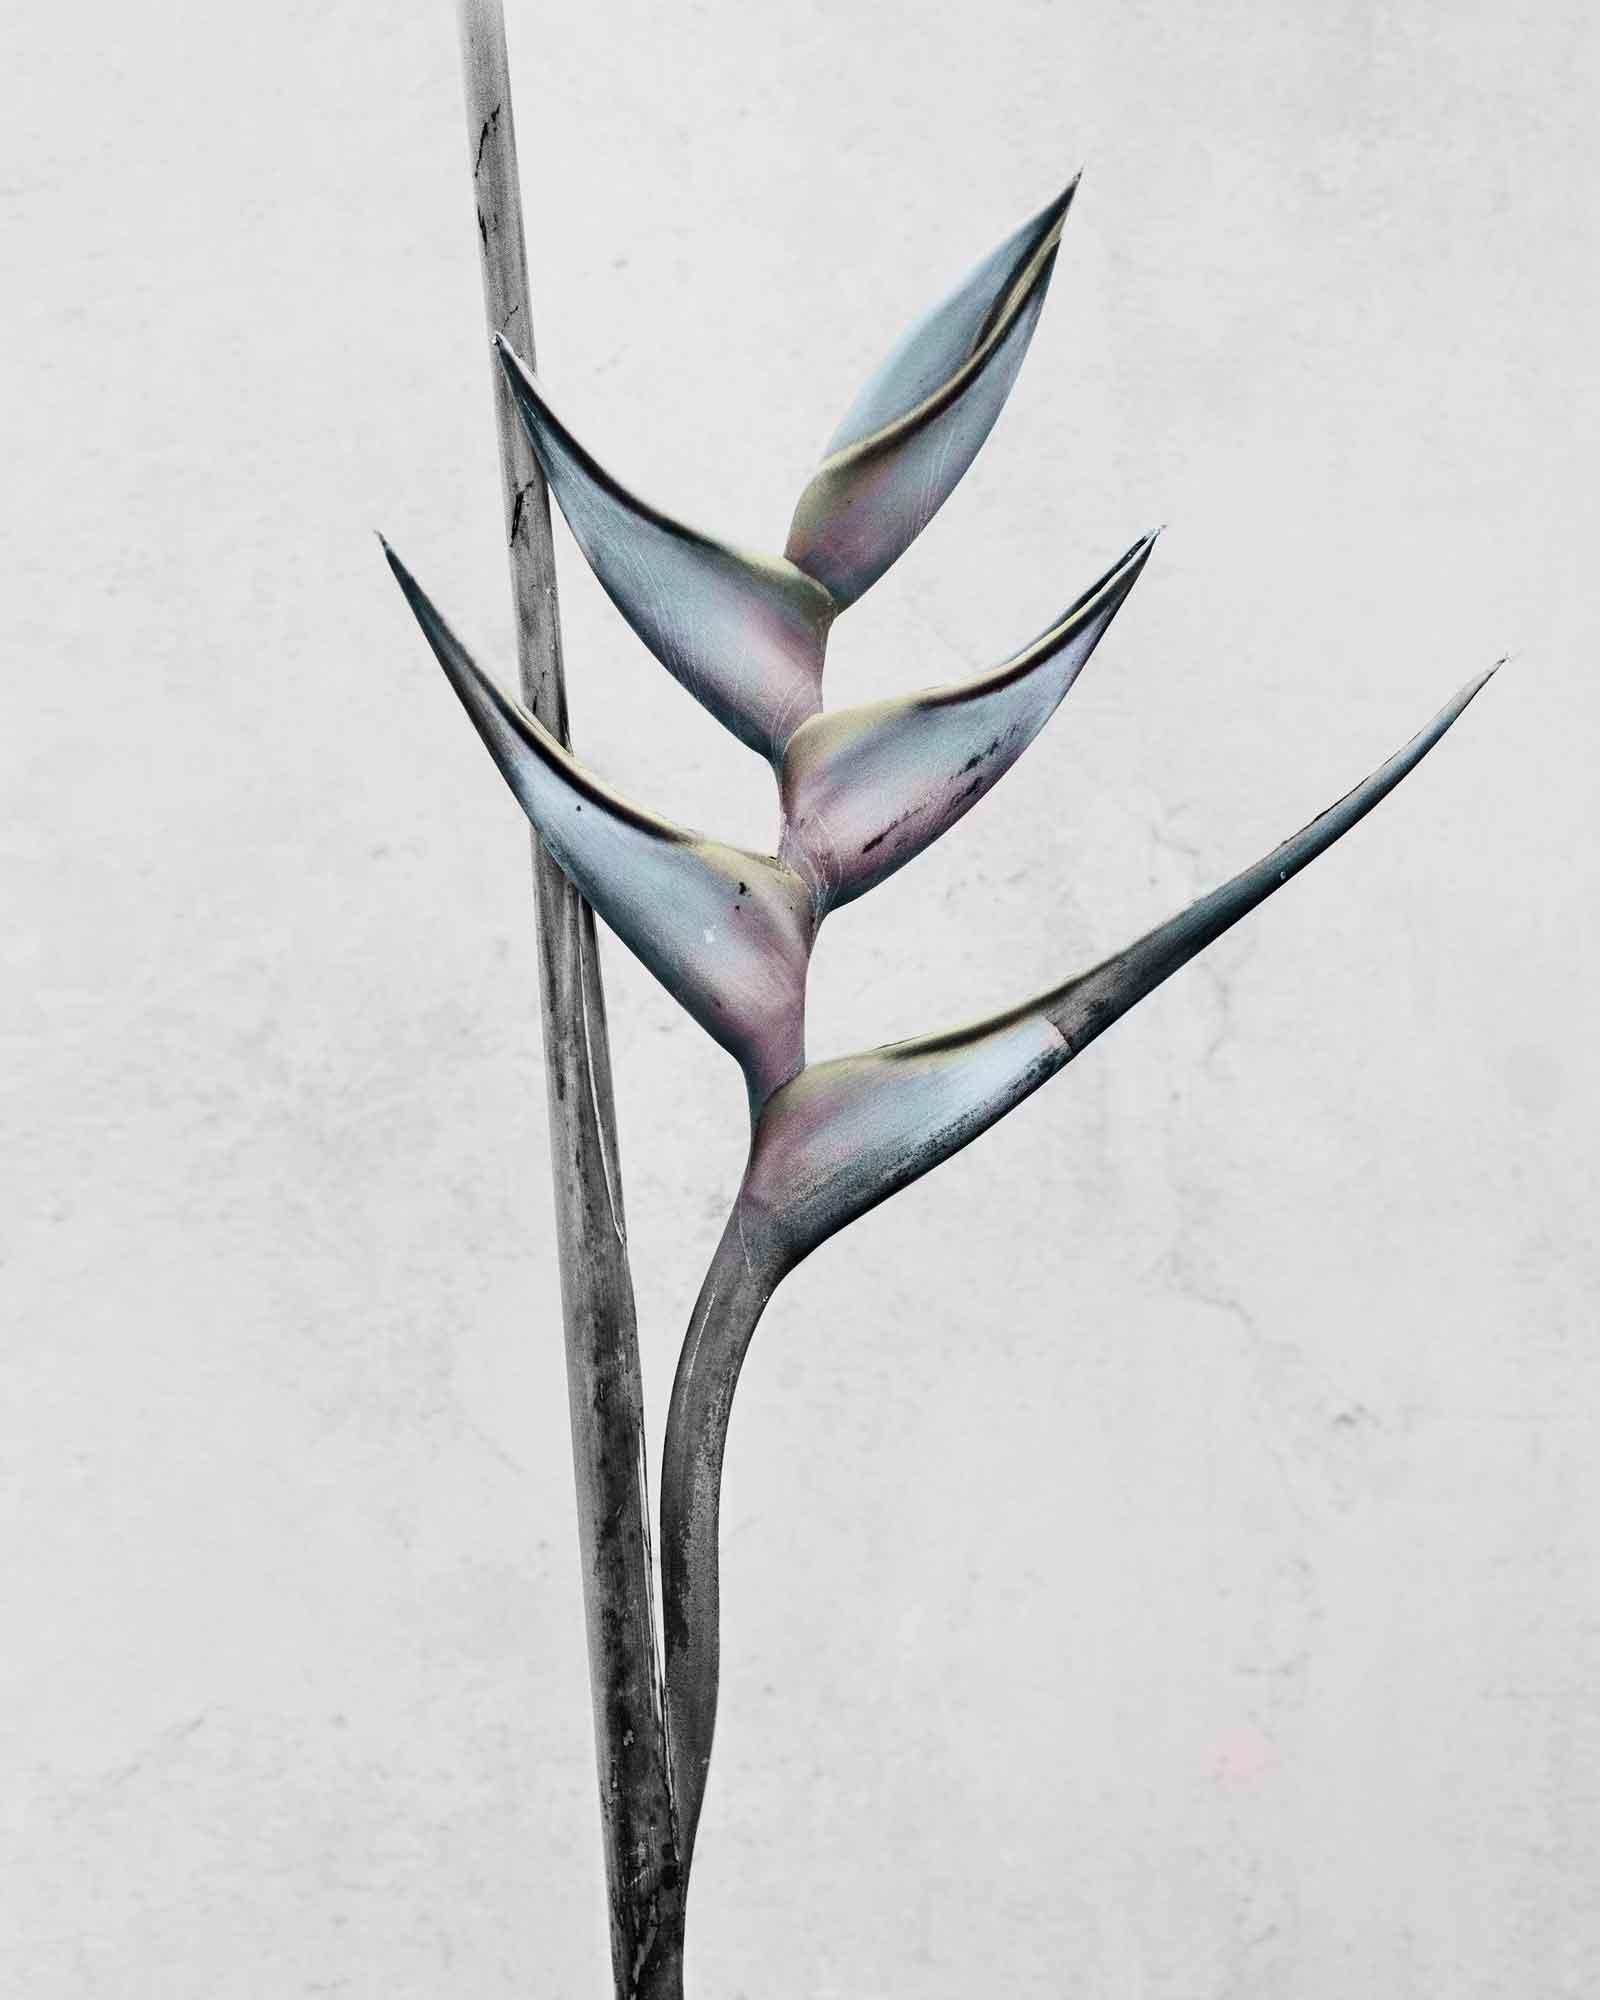 Vee Speers Color Photograph – Botanica #13 (Heliconia Bihai)